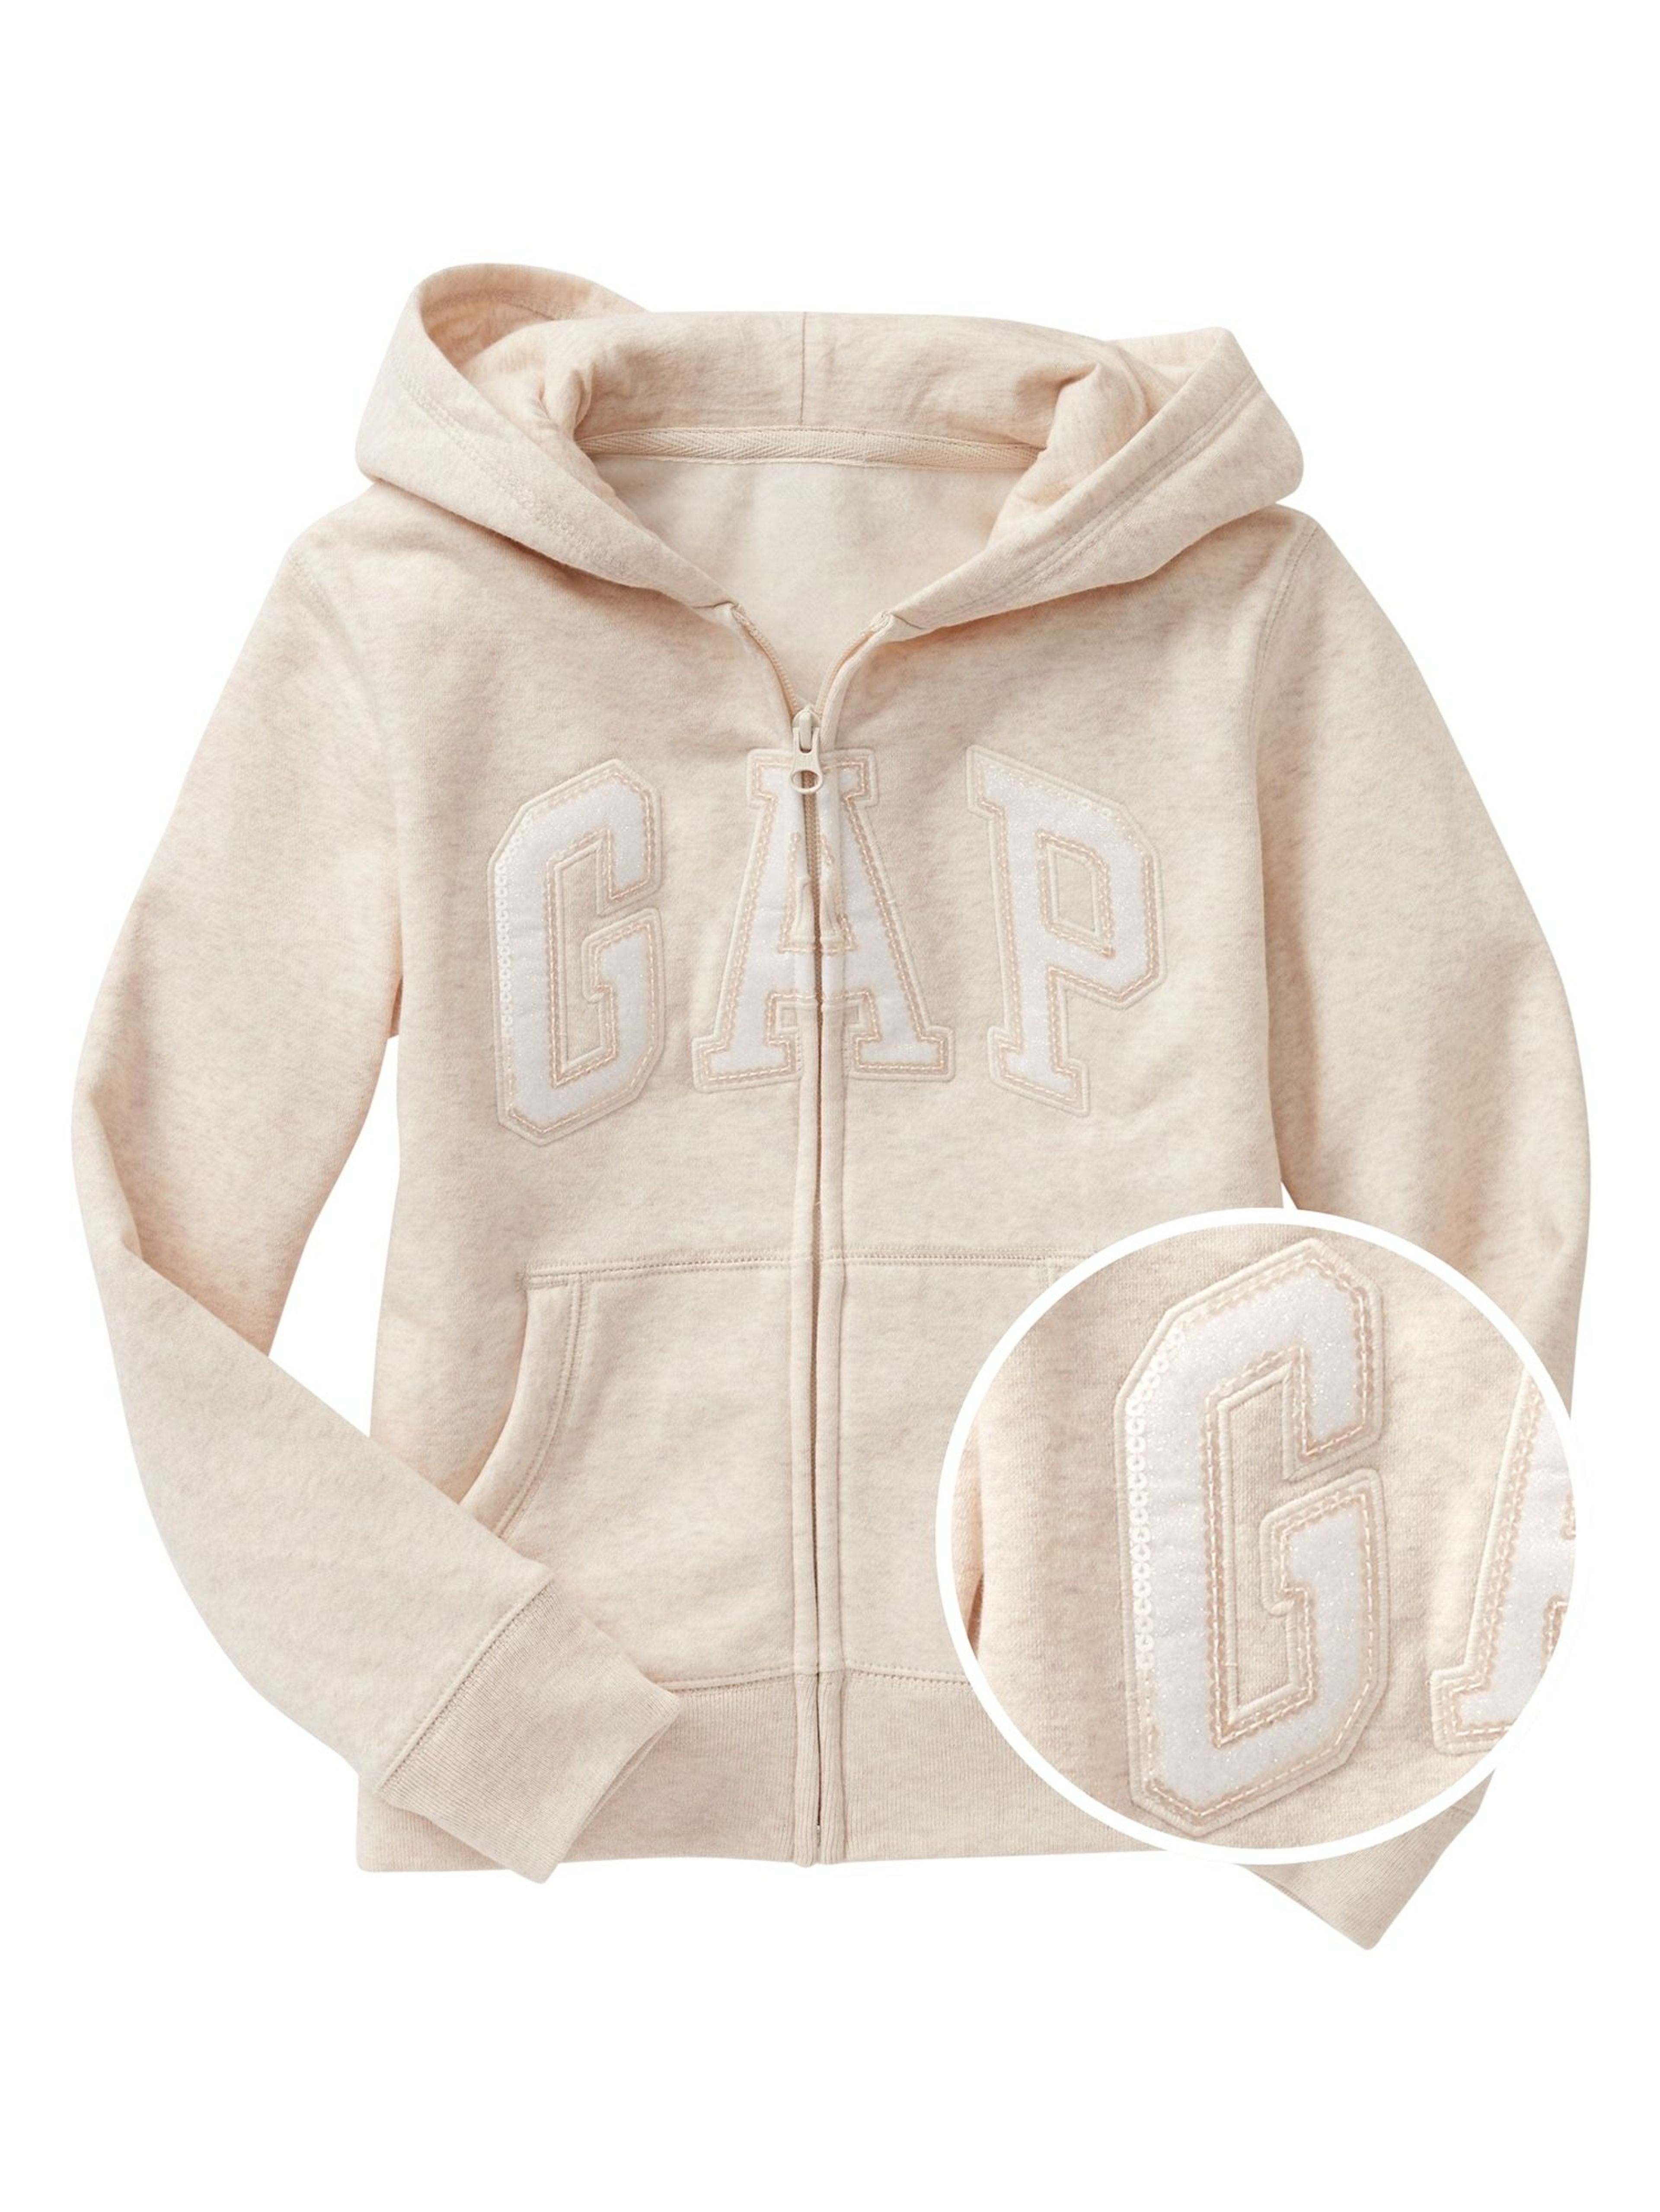 Bluza dziecięca logo GAP zip